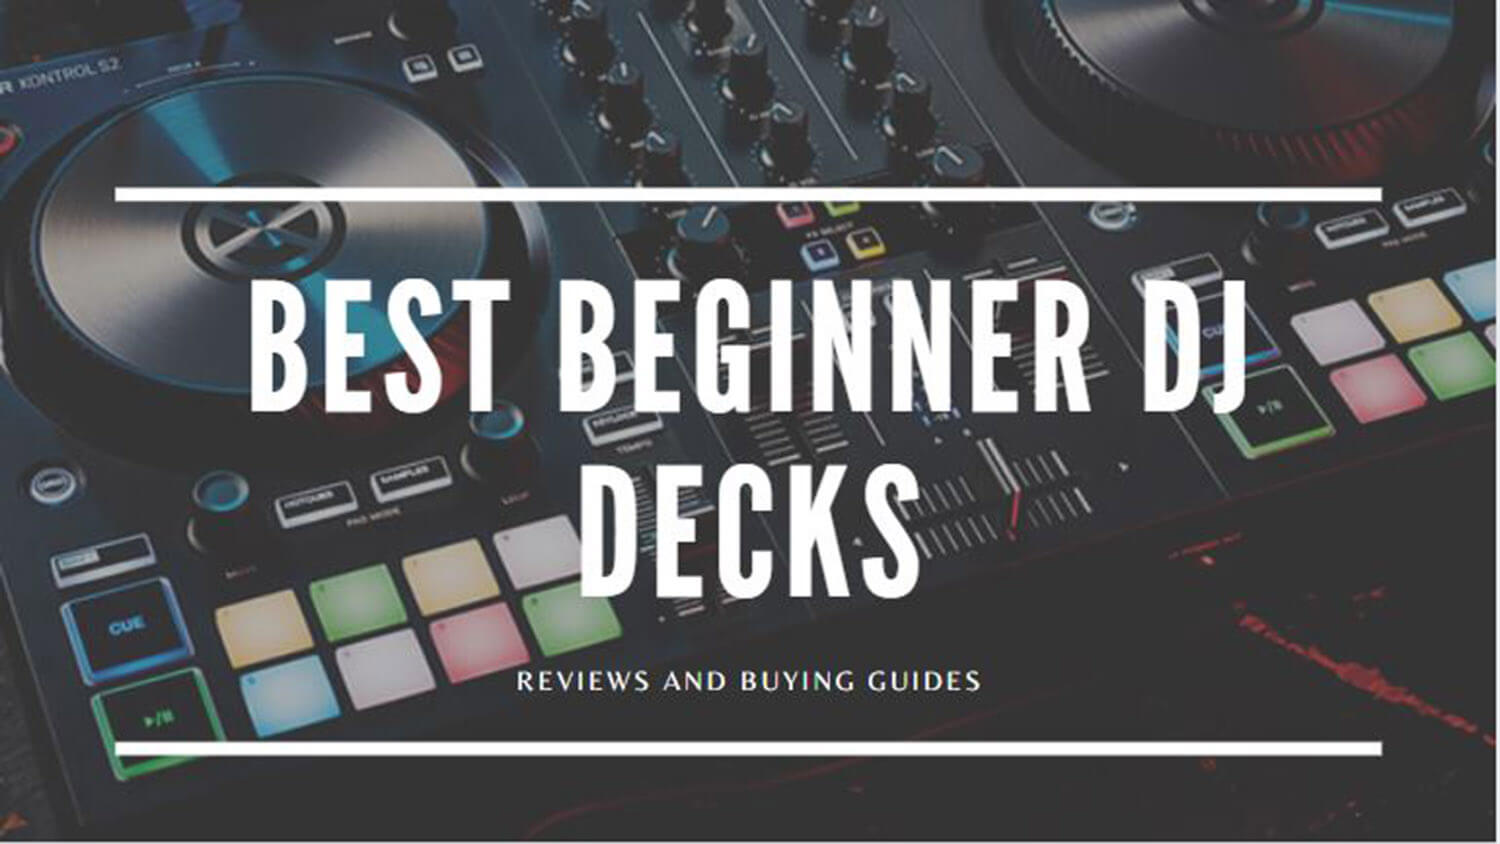 Best Beginners Dj Decks